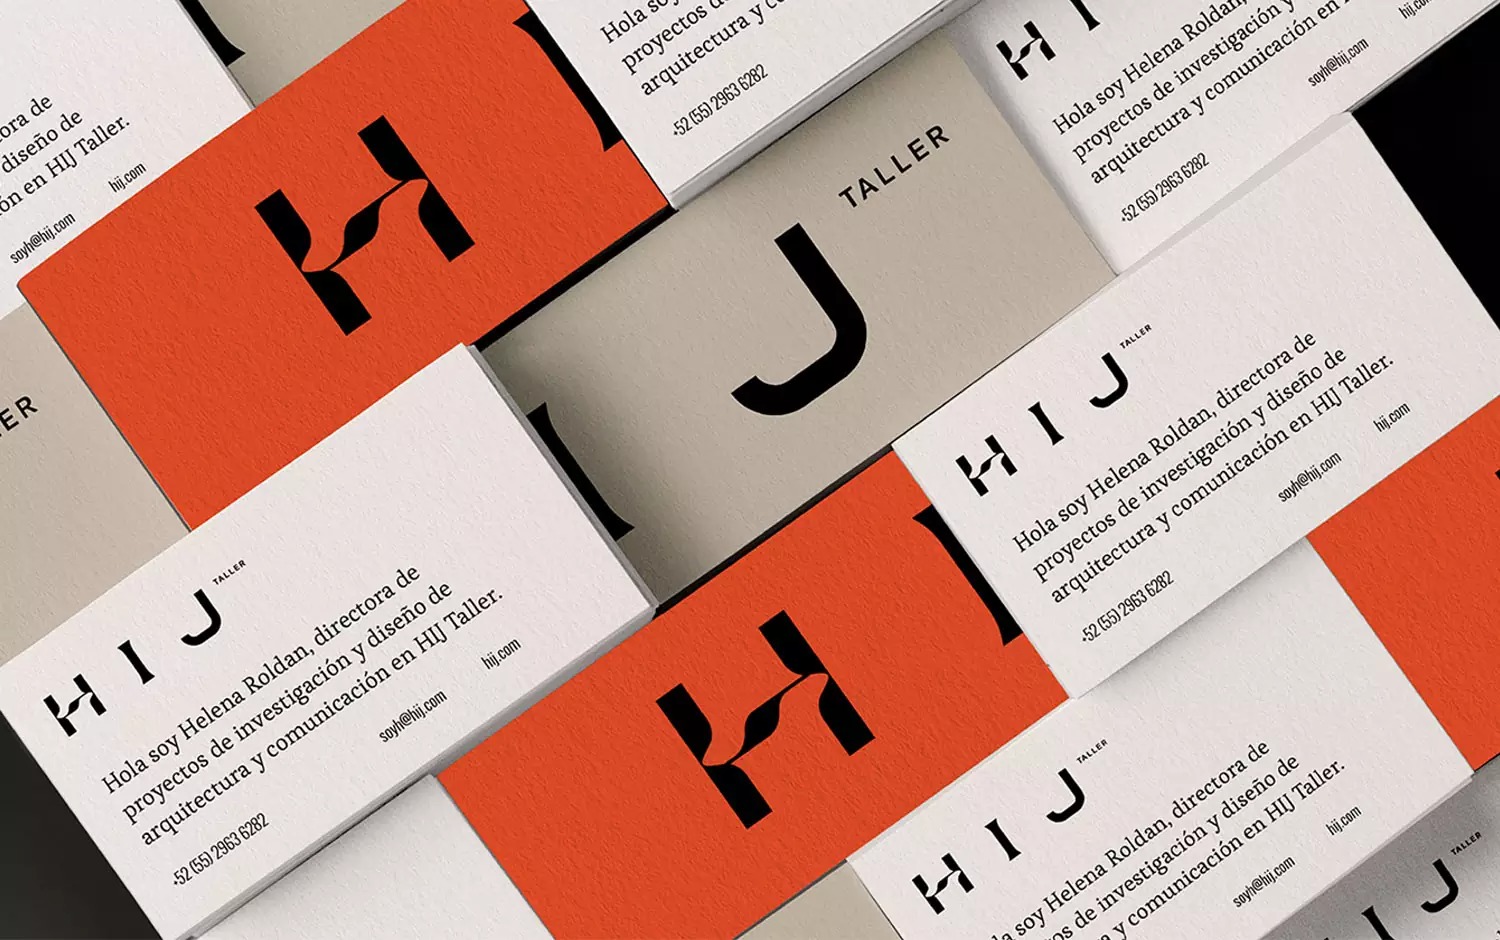 HIJ Taller建筑设计工作室品牌视觉设计